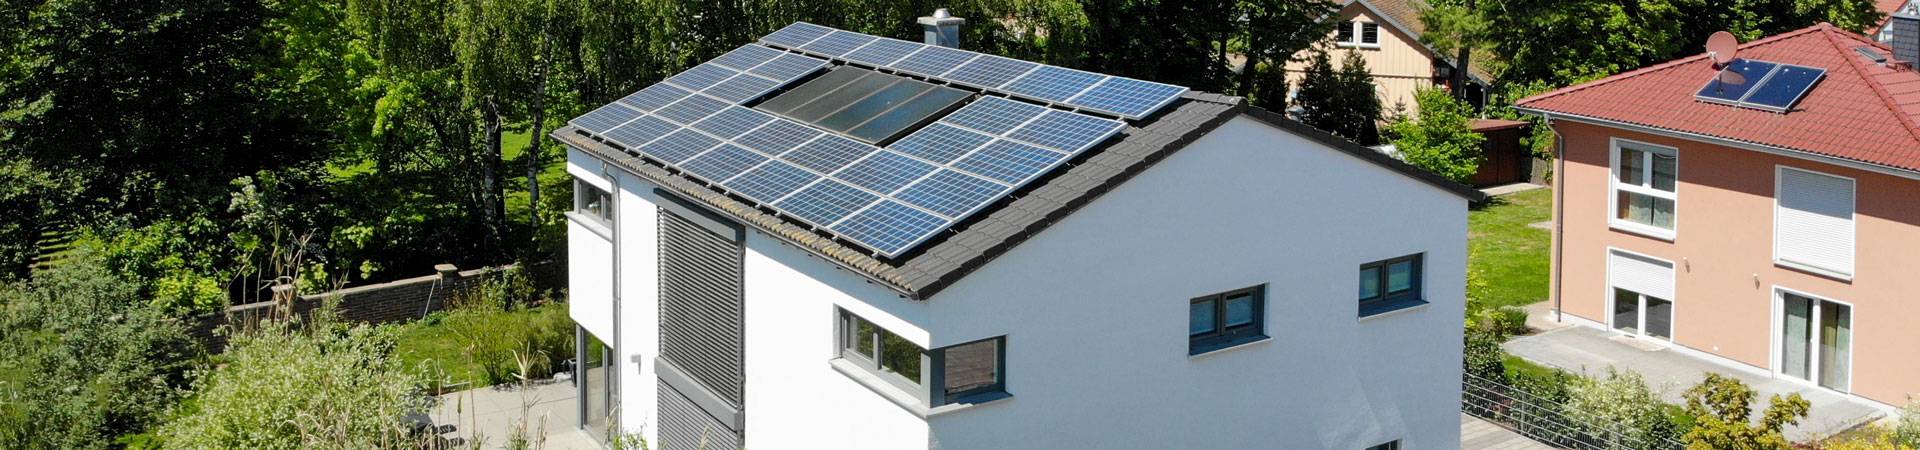 photovoltaik osnabrück